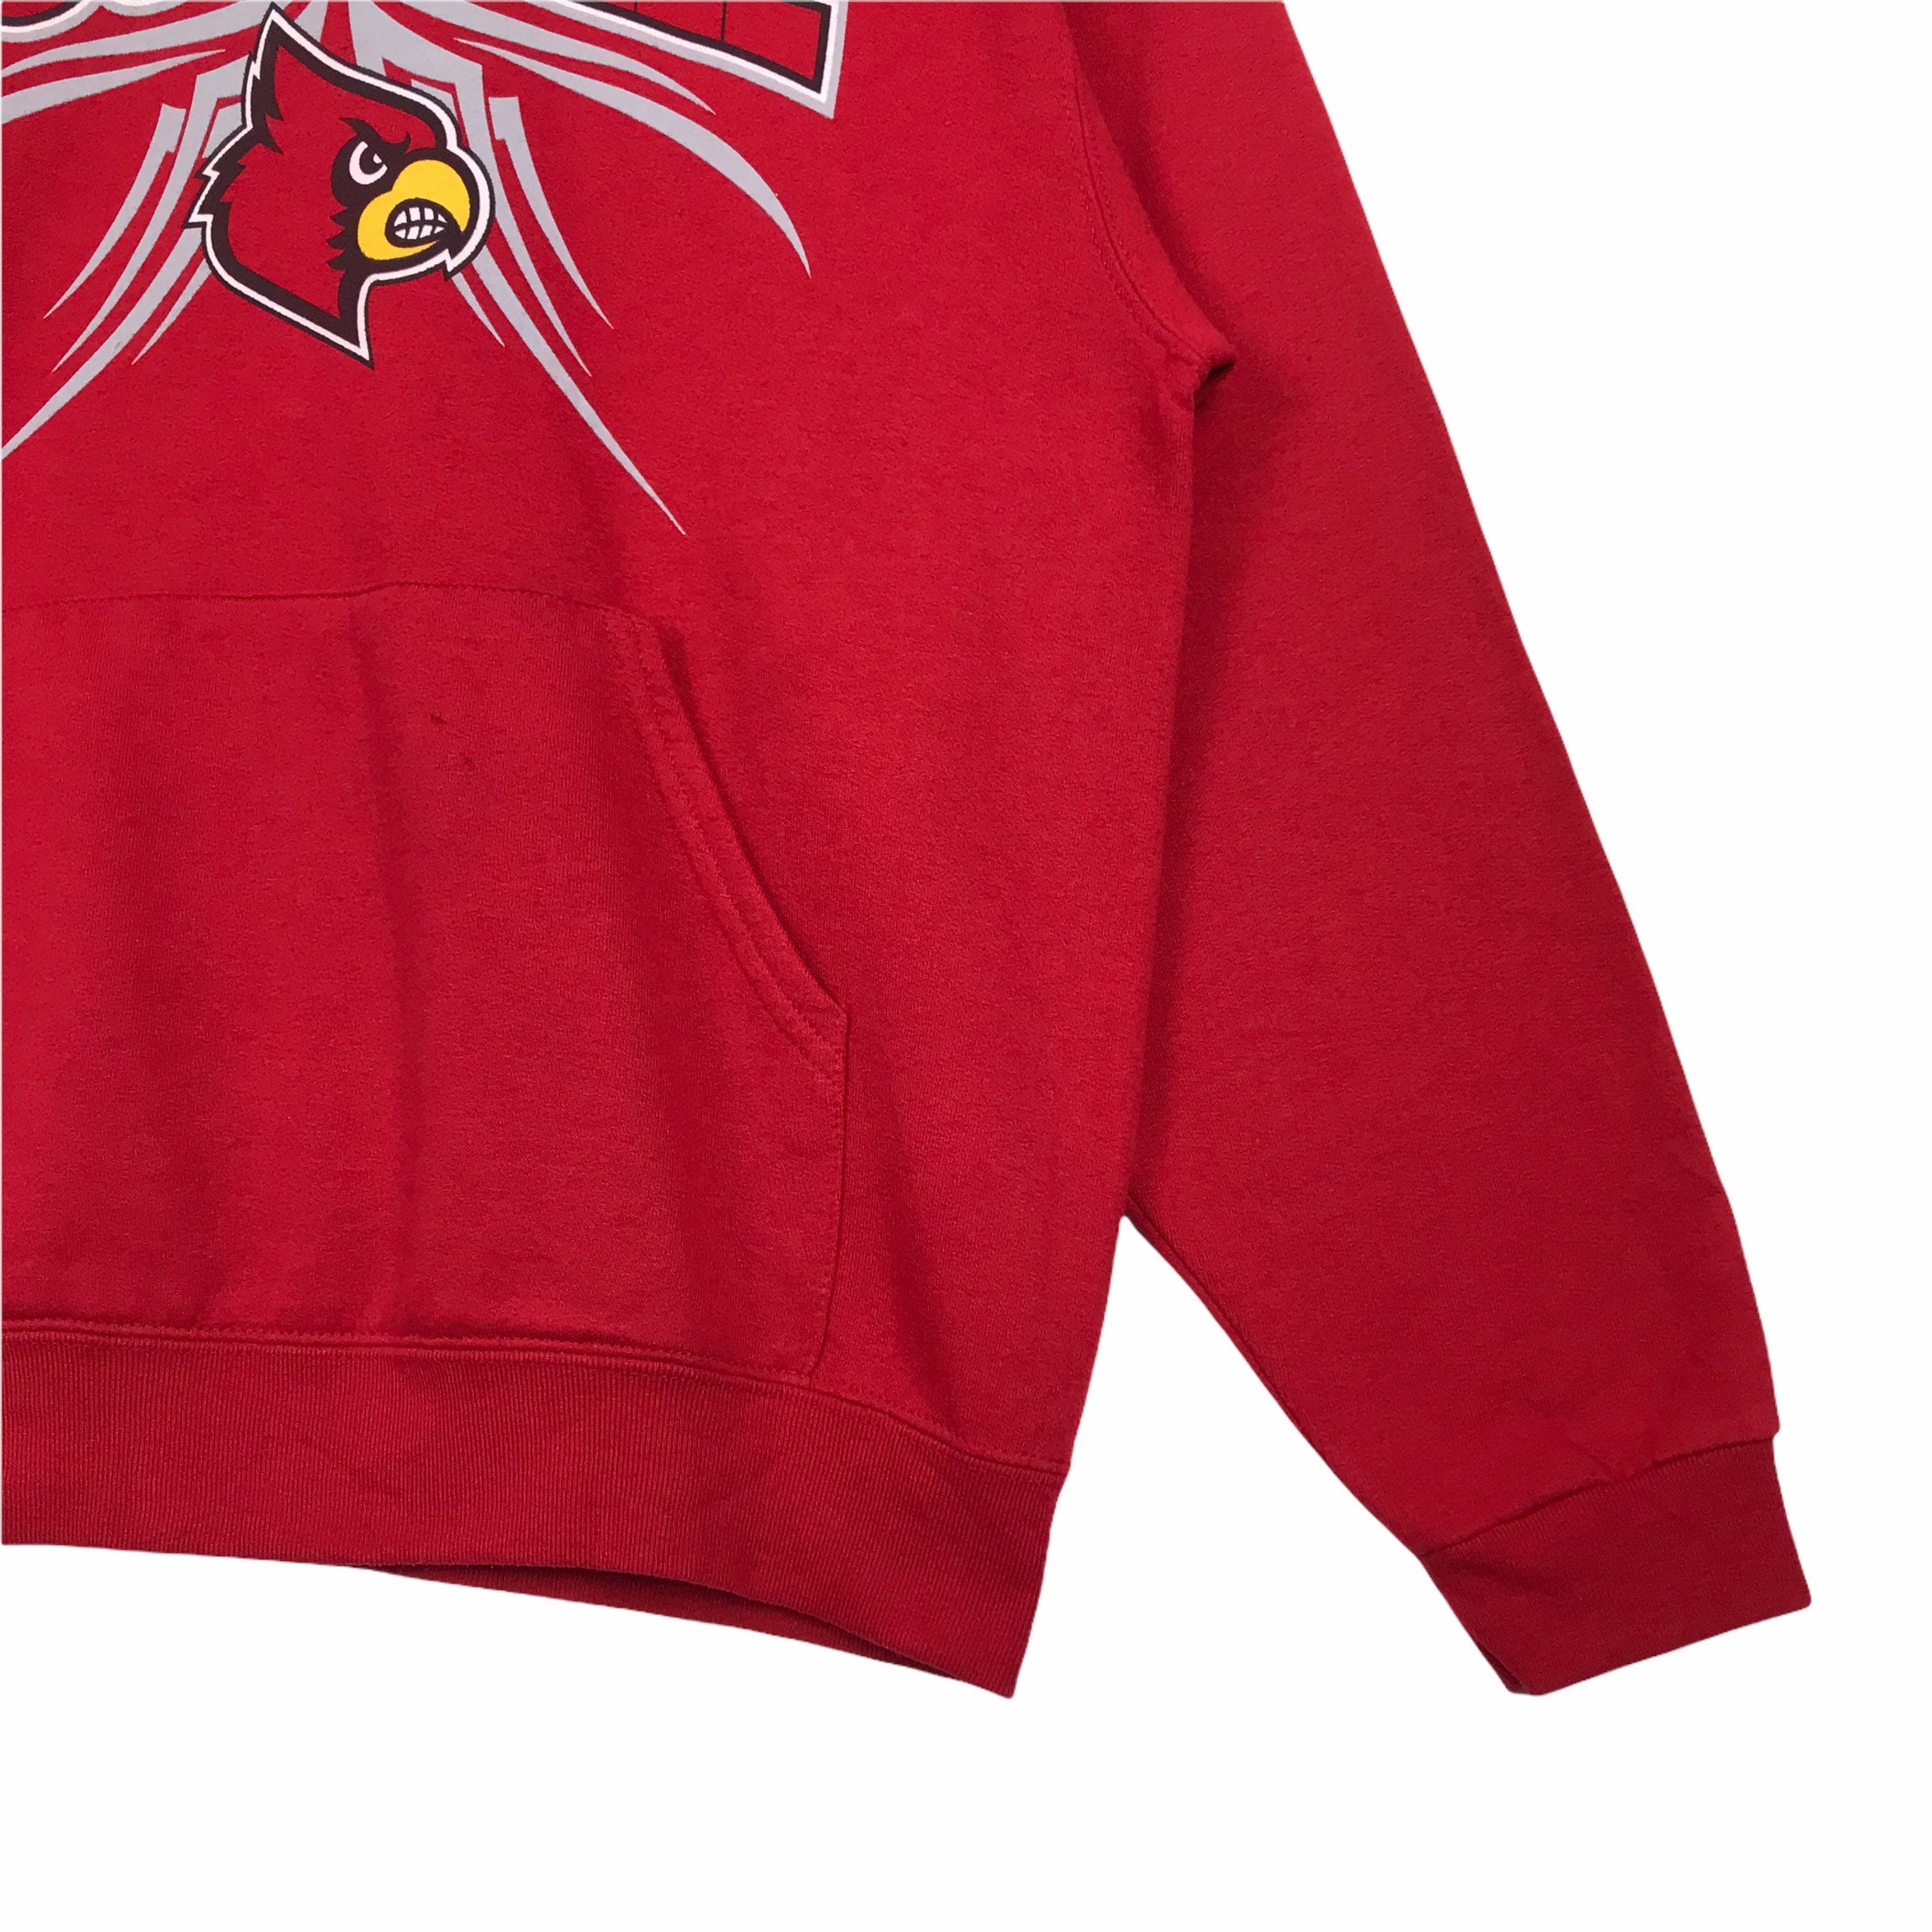 Vintage NCAA Louisville Cardinals Pullover Hoodie Printed -  Israel